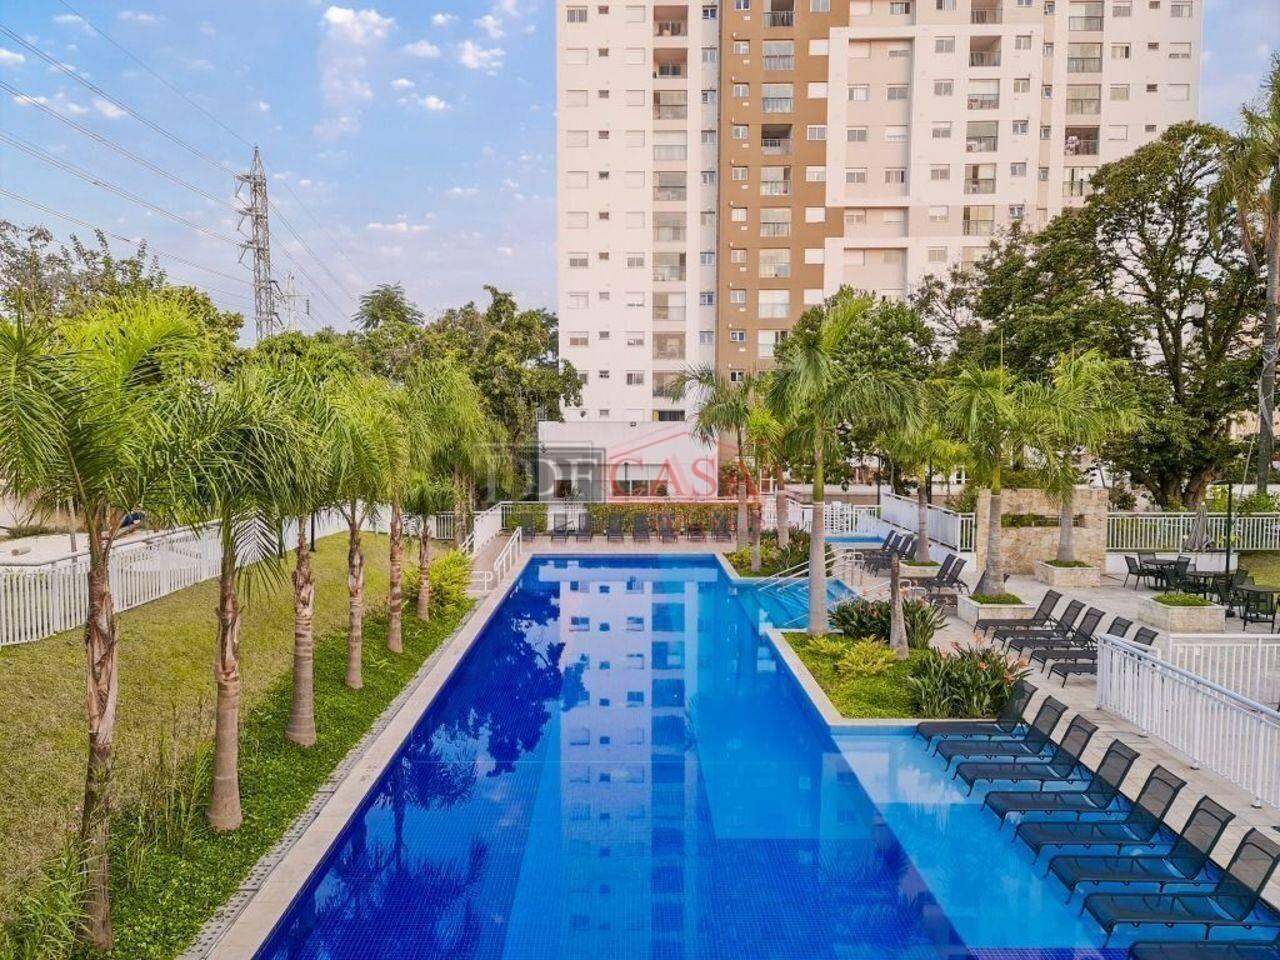 Apartamento Penha, São Paulo - SP